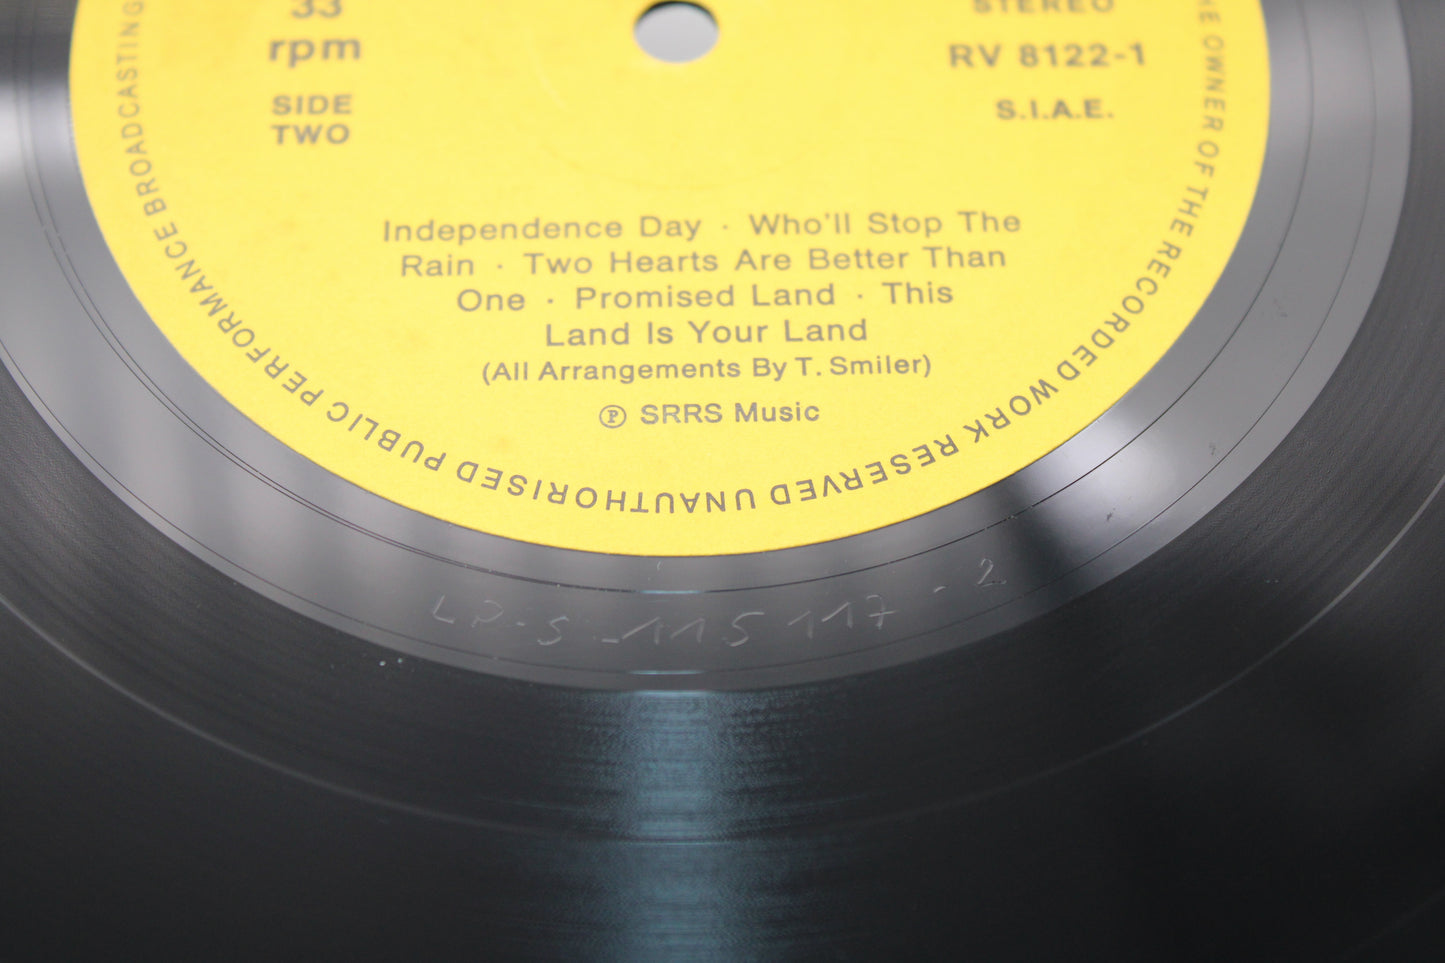 Bruce Springsteen & ESB BOSS HITS THE 'BANDLANDS' TOBI SMILES - MISSPELLED Vinyl Bootleg